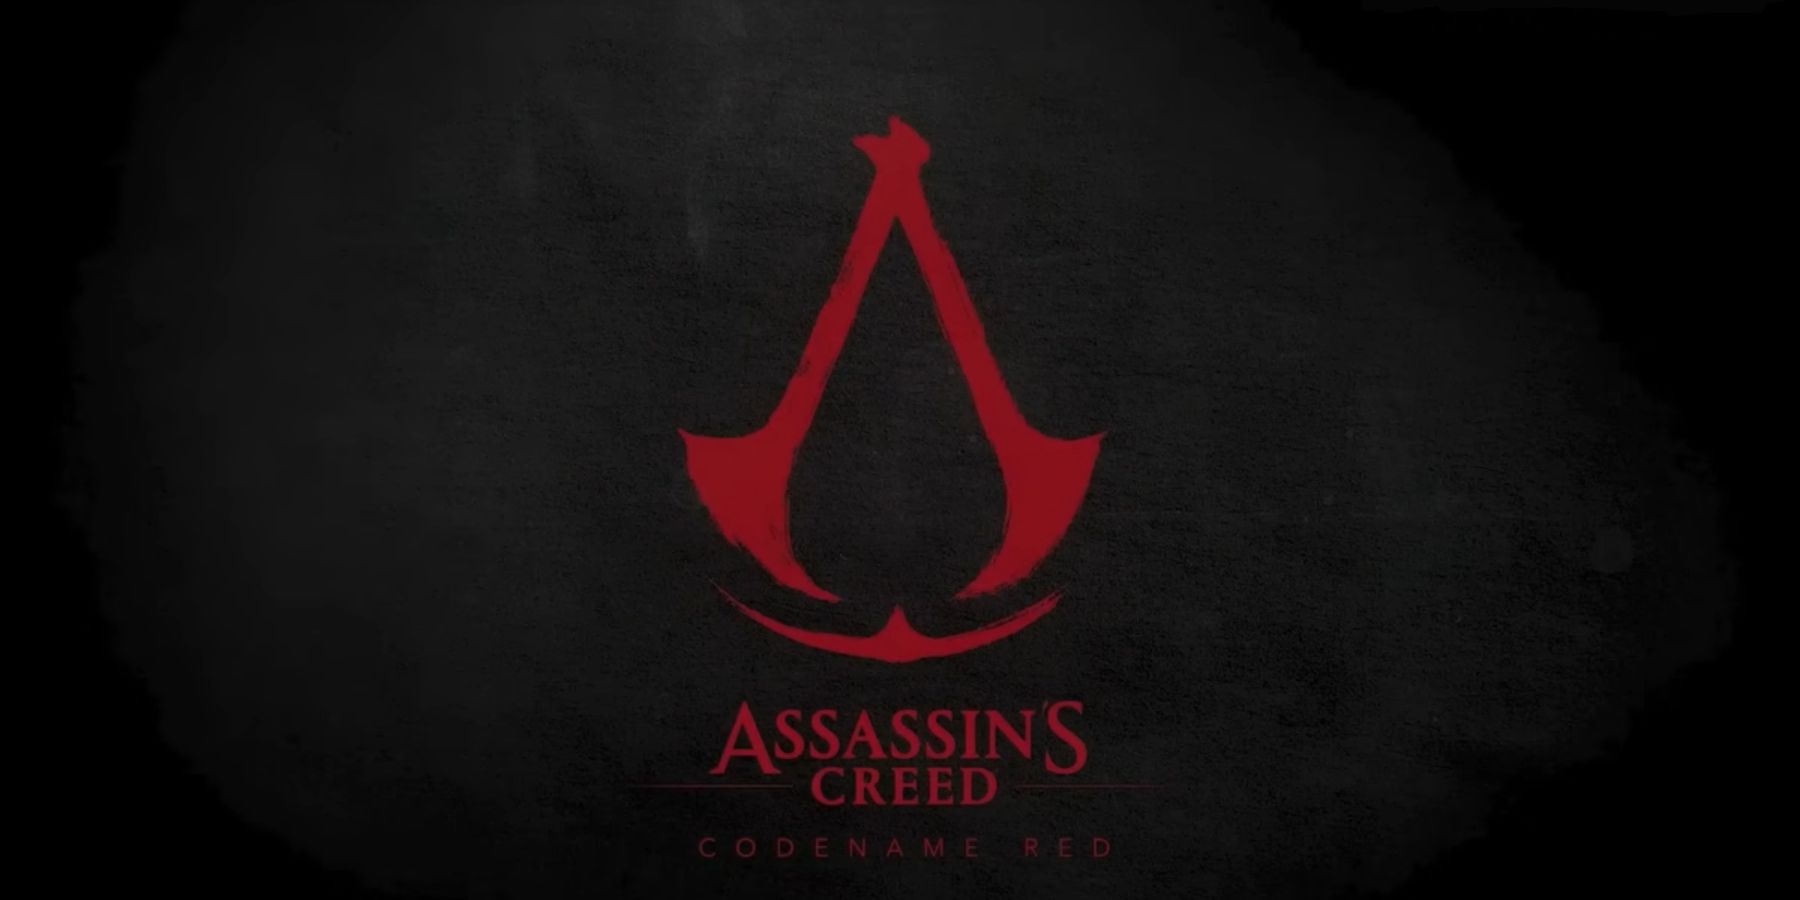 Ubisoft -medarbejder hævder, at udviklere har forladt selskabet på grund af Assassin’s Creed Red Director